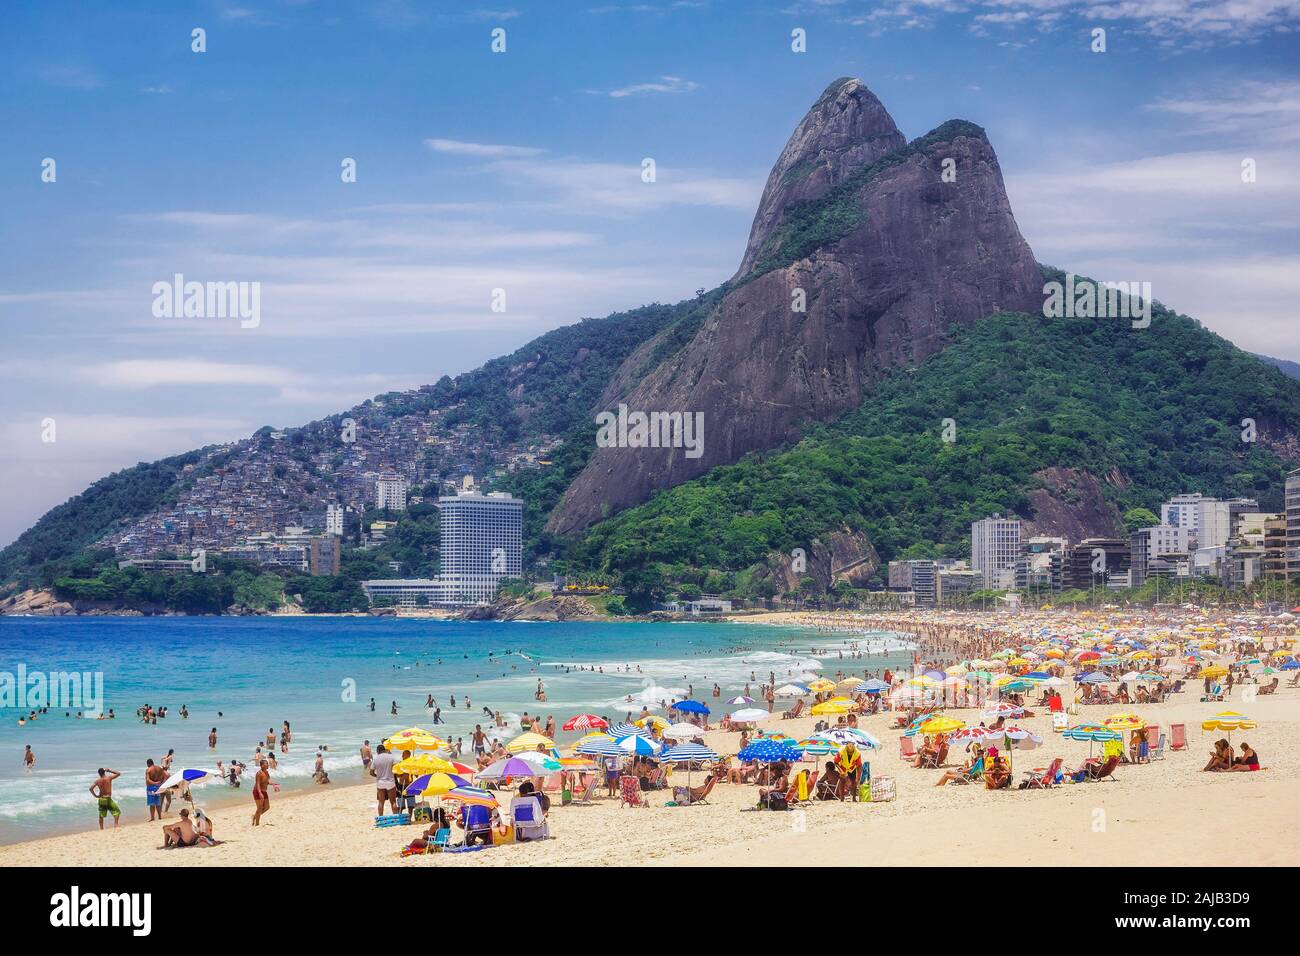 Ipanema Beach in Rio de Janeiro, Brazil. Stock Photo